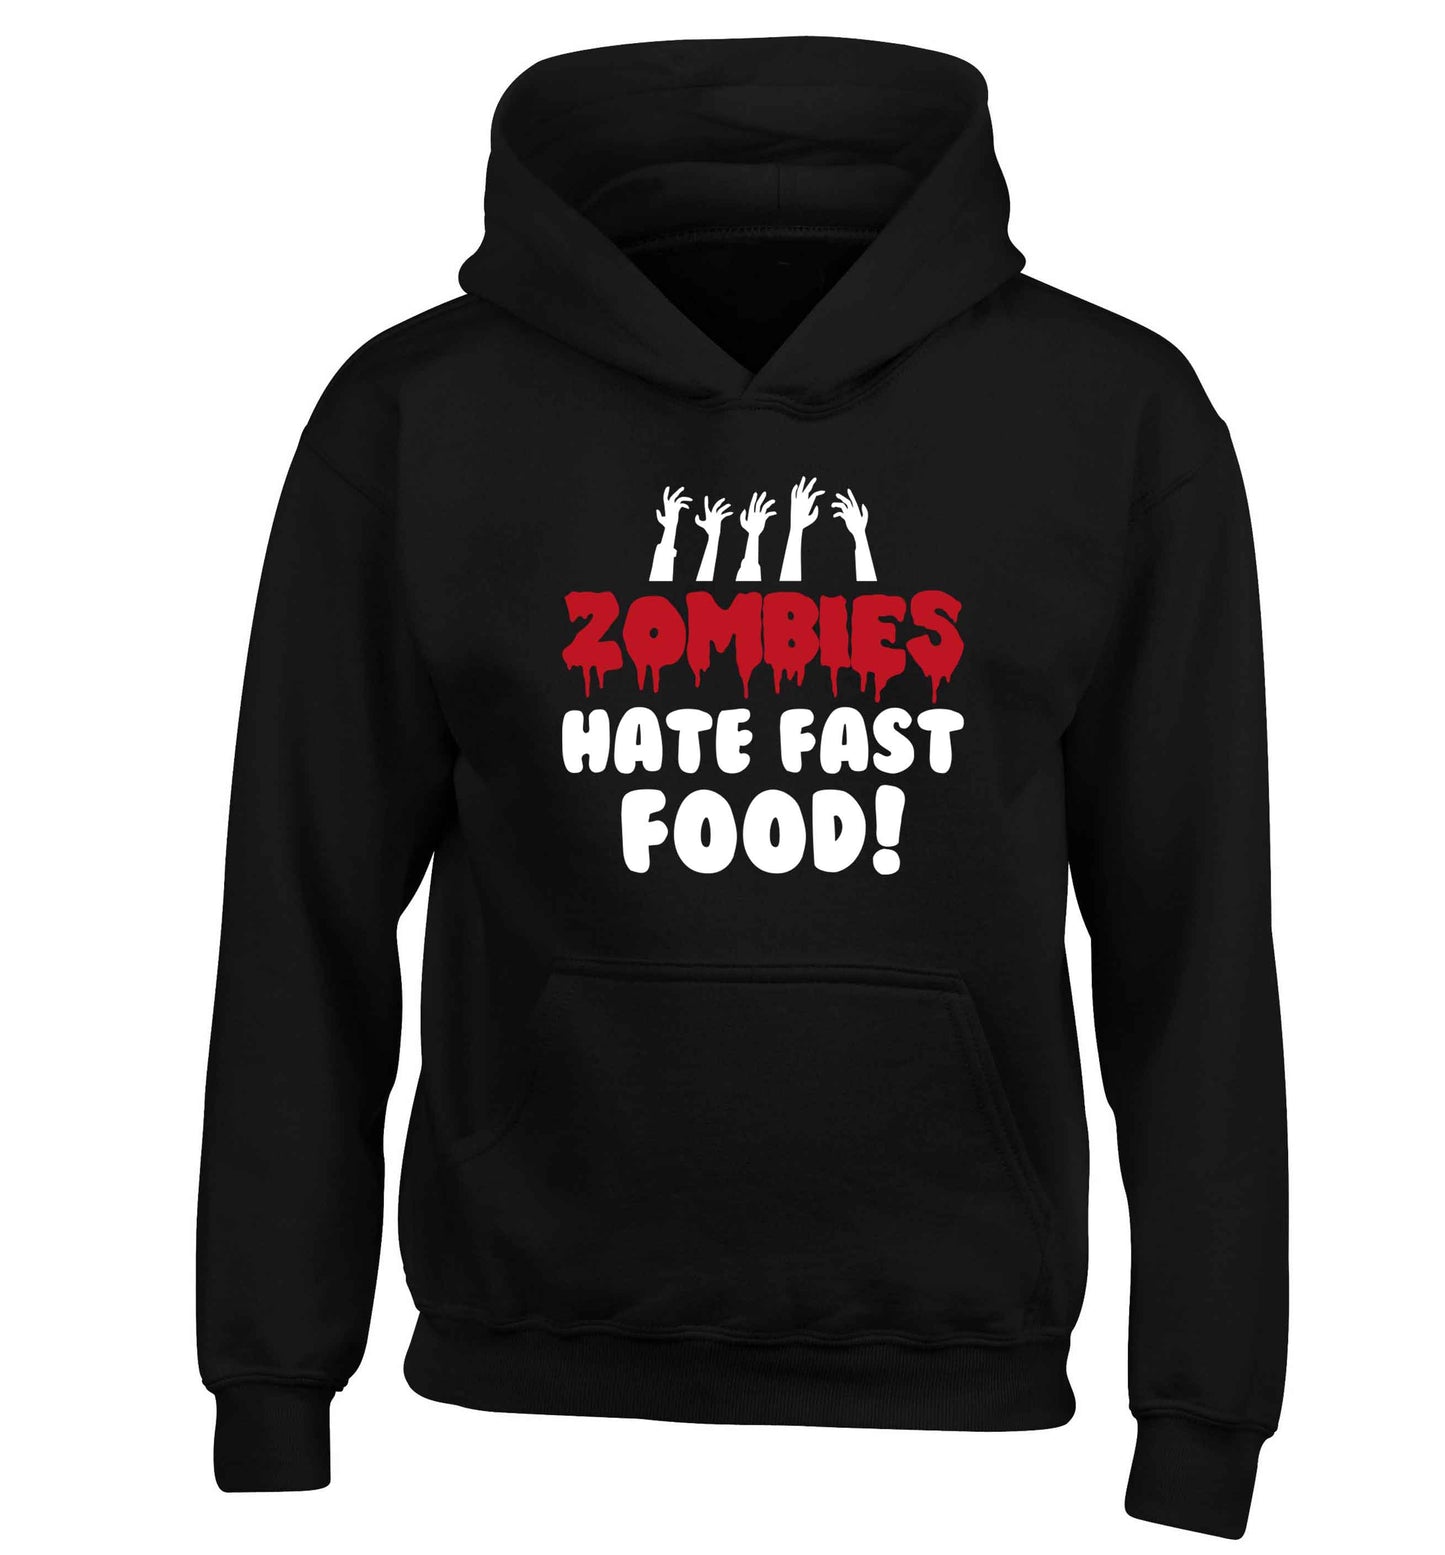 Zombies hate fast food children's black hoodie 12-13 Years